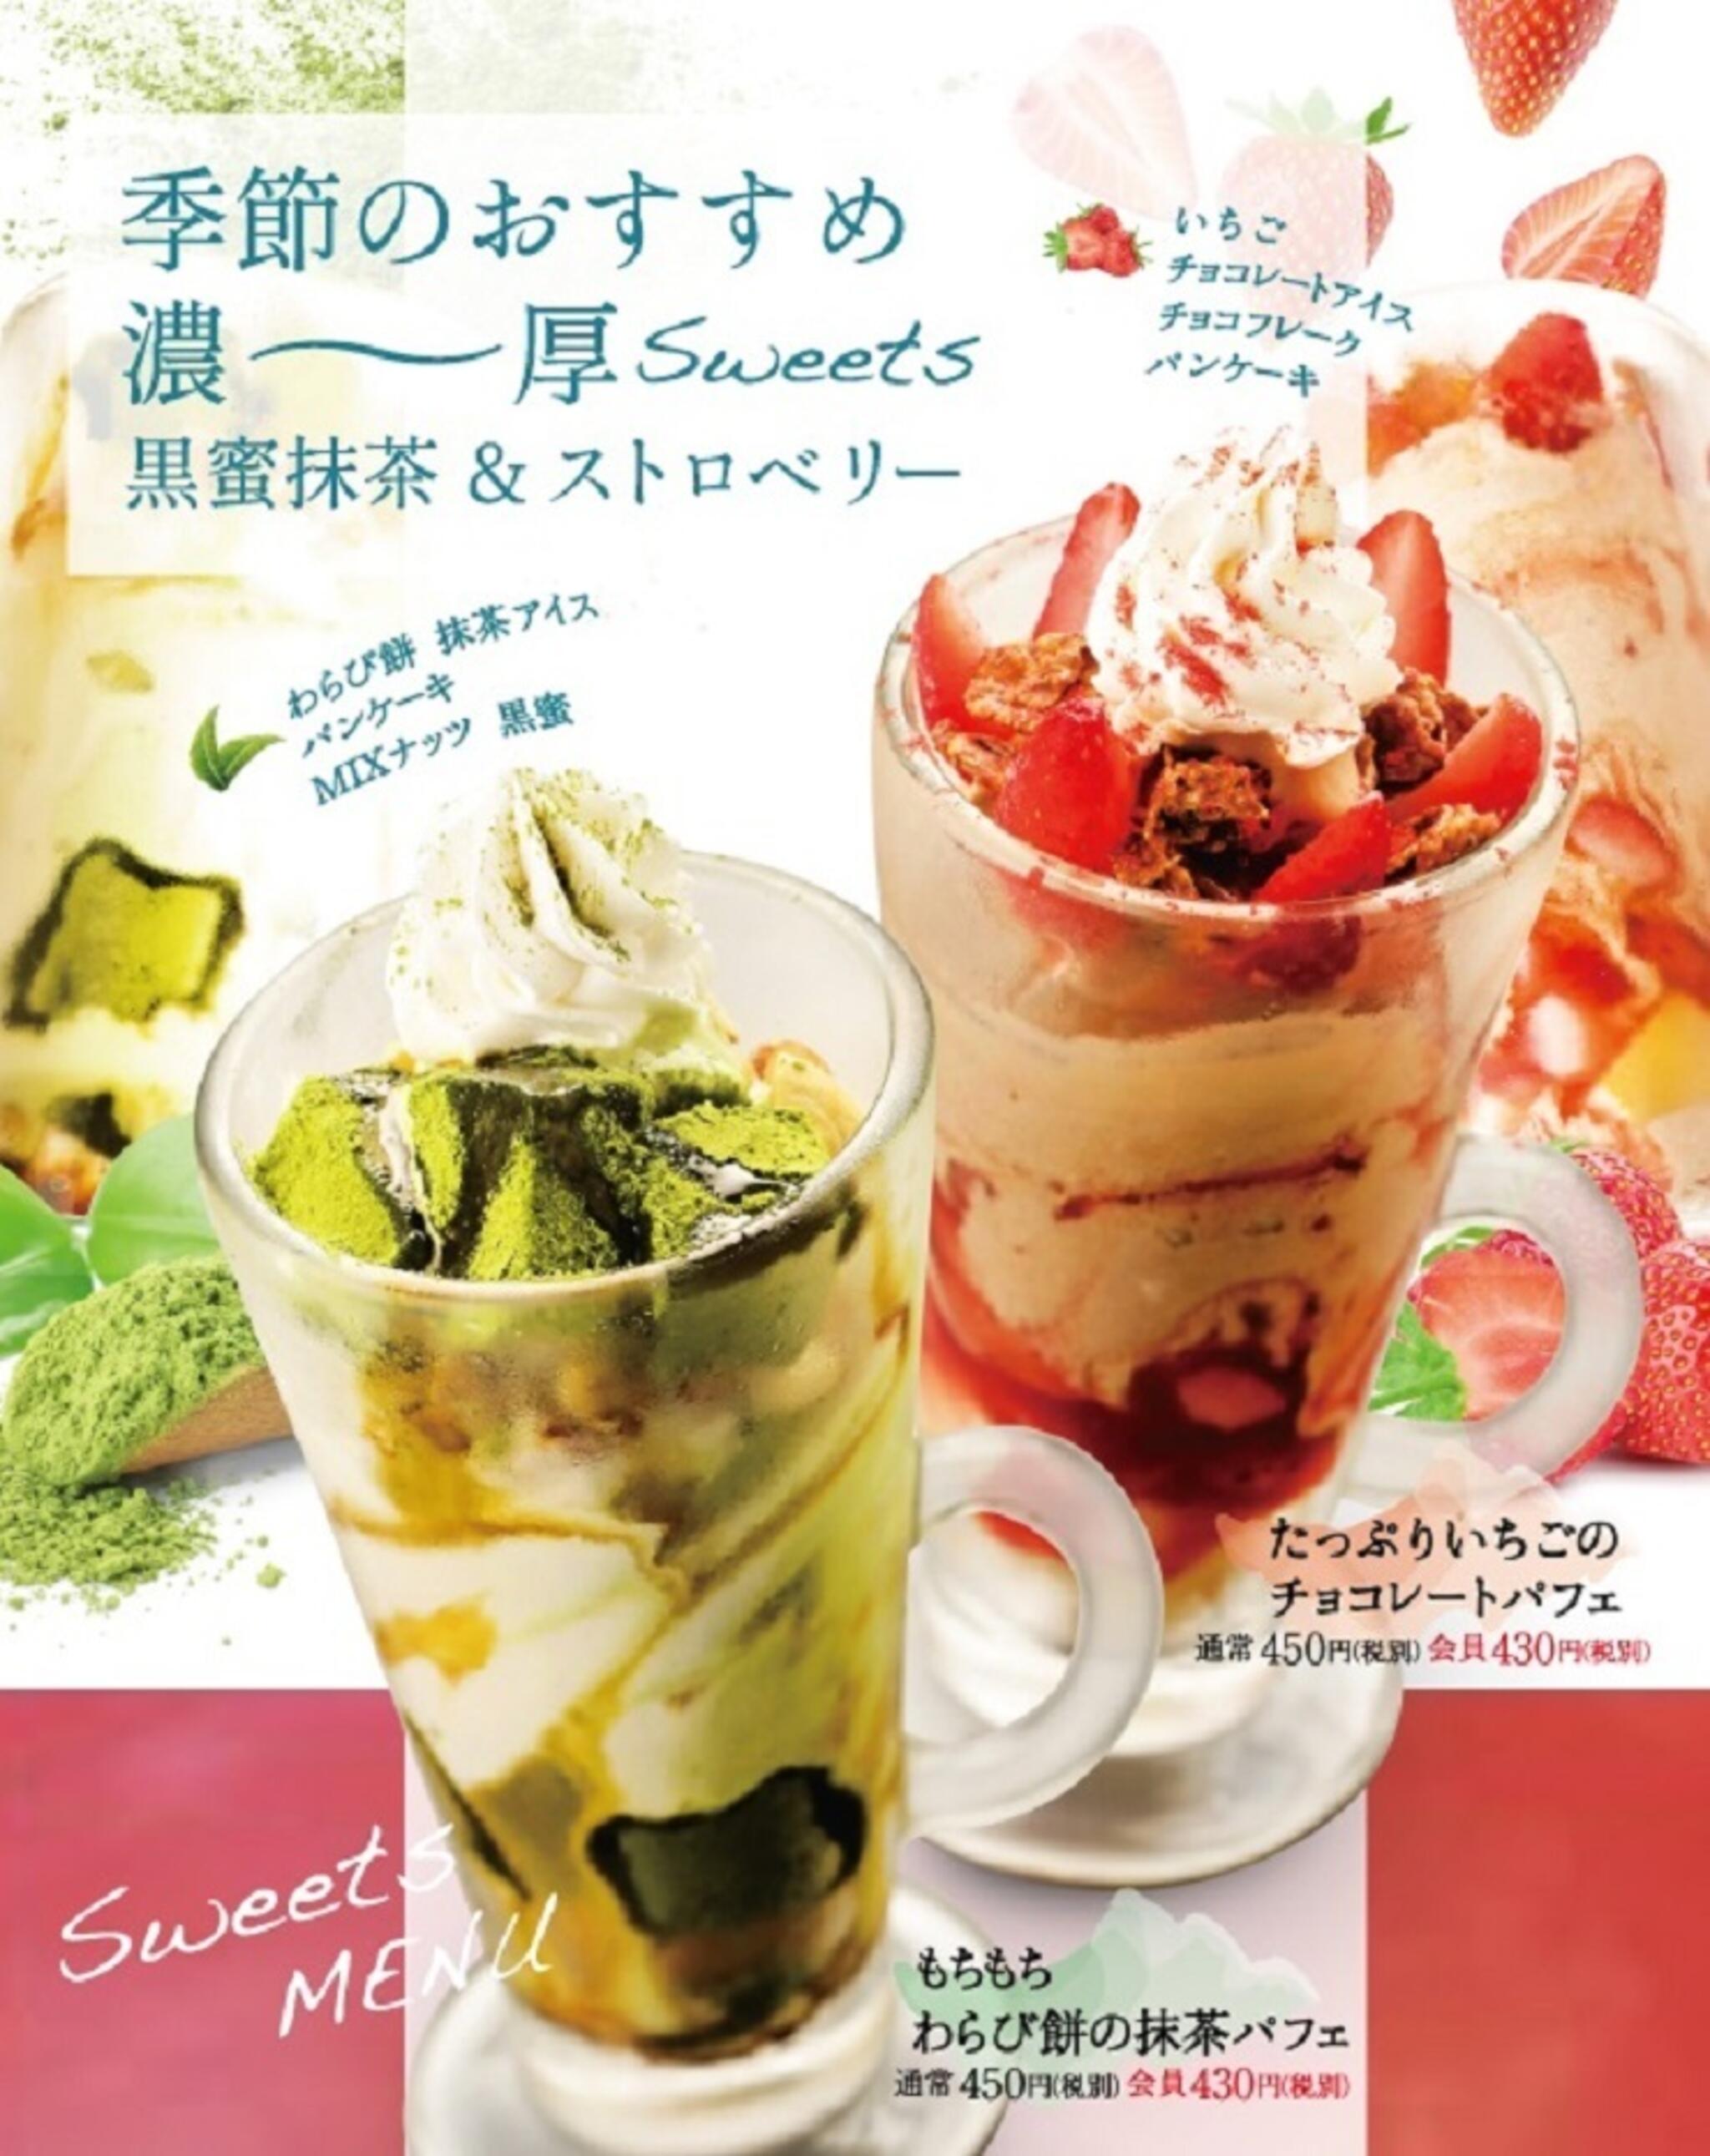 焼肉冷麺やまなか家 上田バイパス店からのお知らせ(🍧🍨🍦季節のおすすめデザート🥄🍧🍨🍦)に関する写真